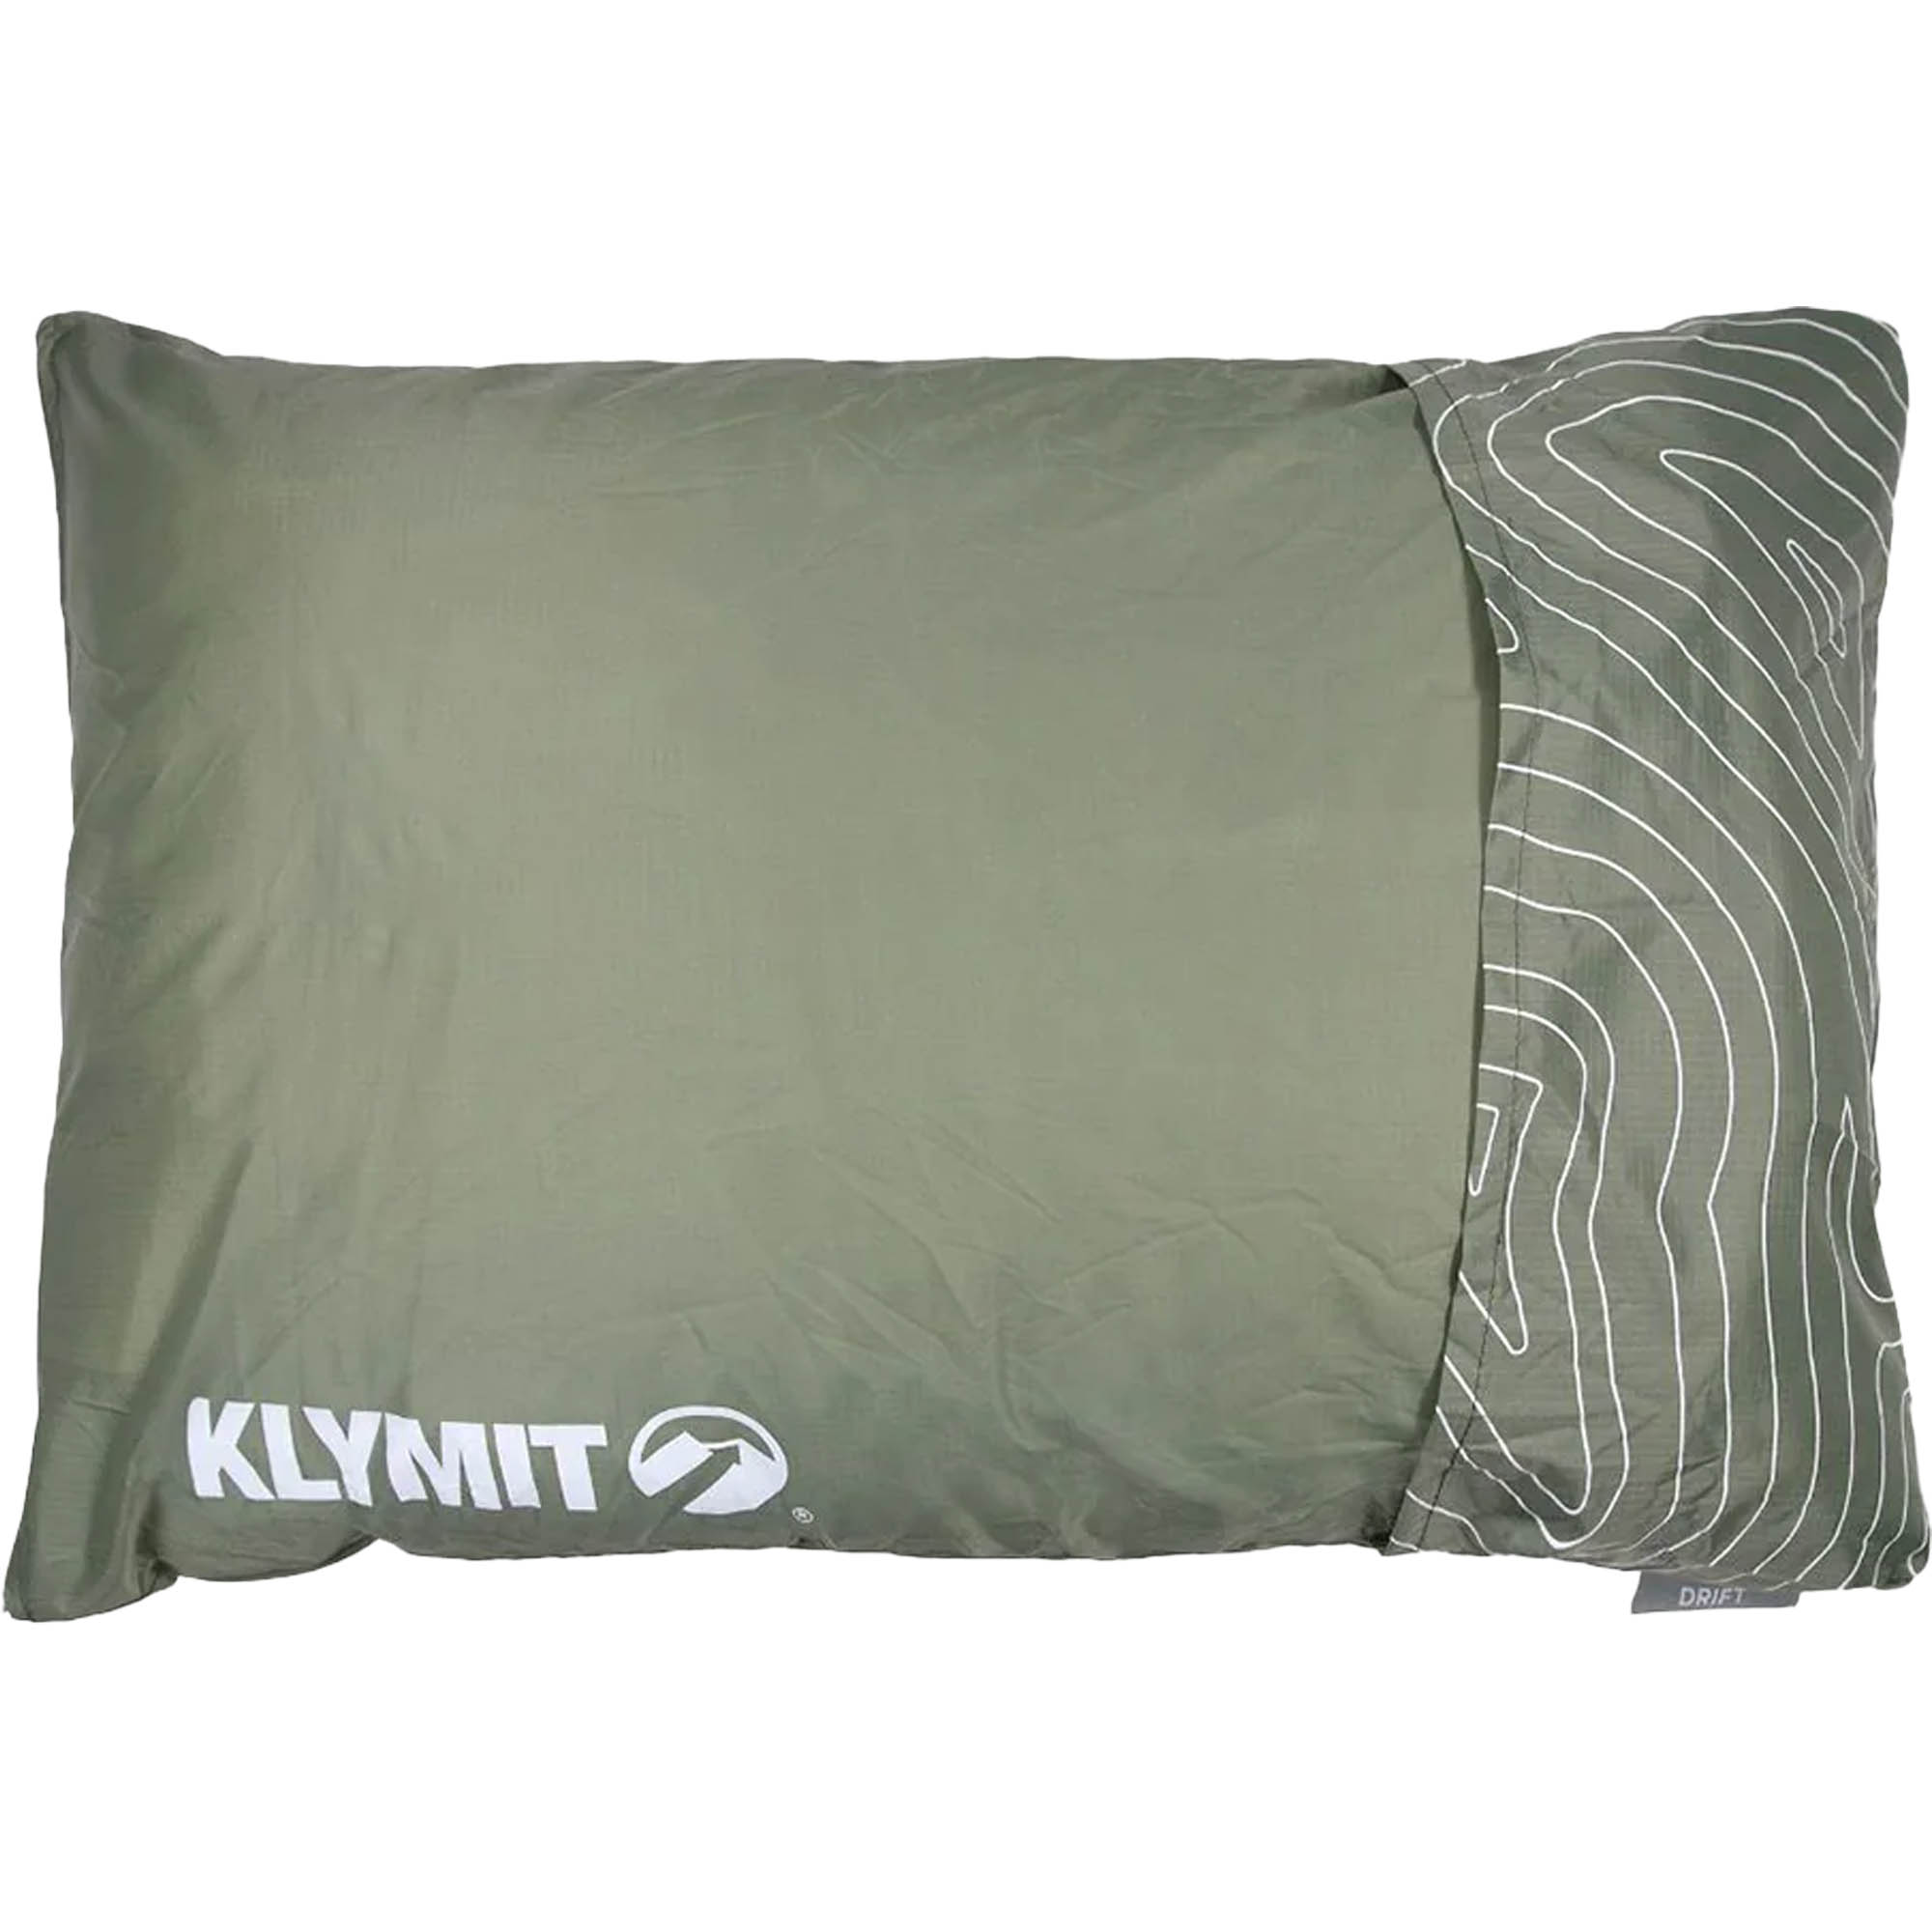 Klymit Drift Memory Foam Camping Pillow